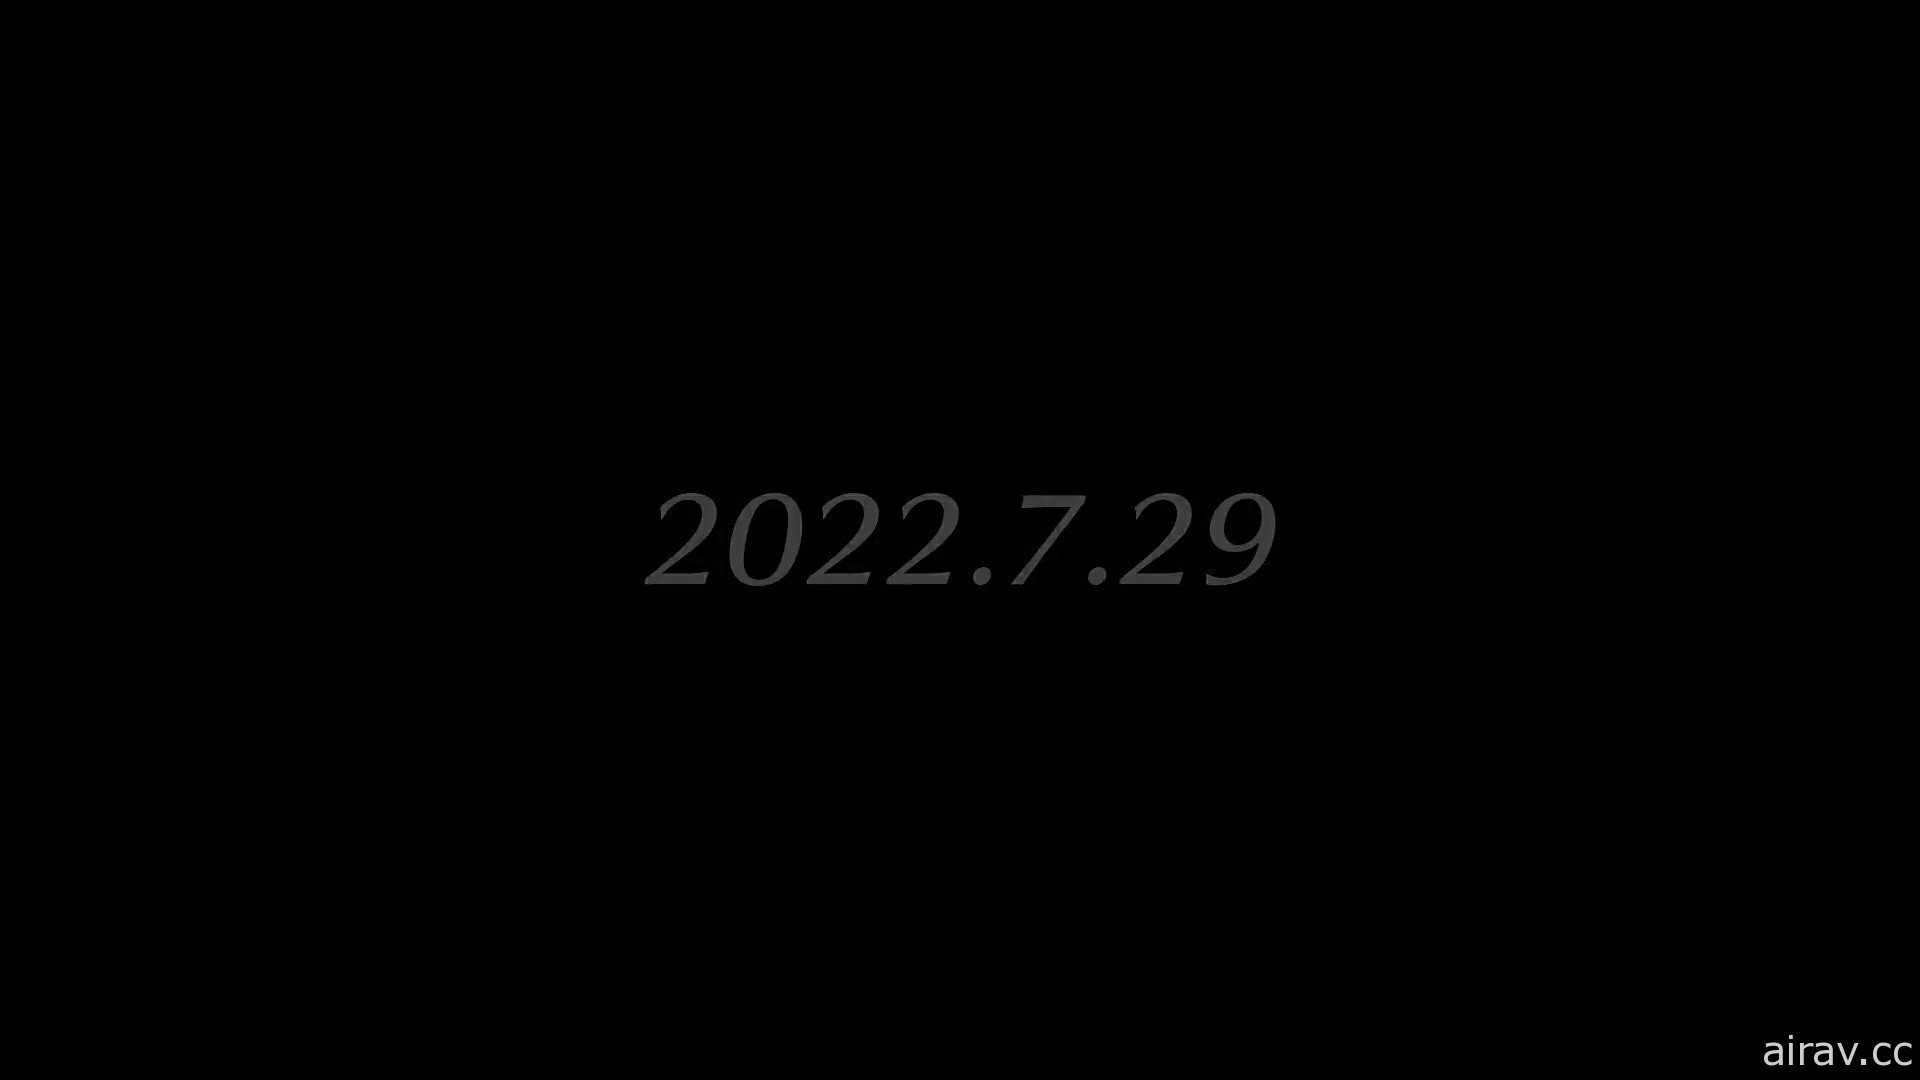 《异度神剑 3》公开第二波宣传影片 确定将提前于 7 月 29 日发售！